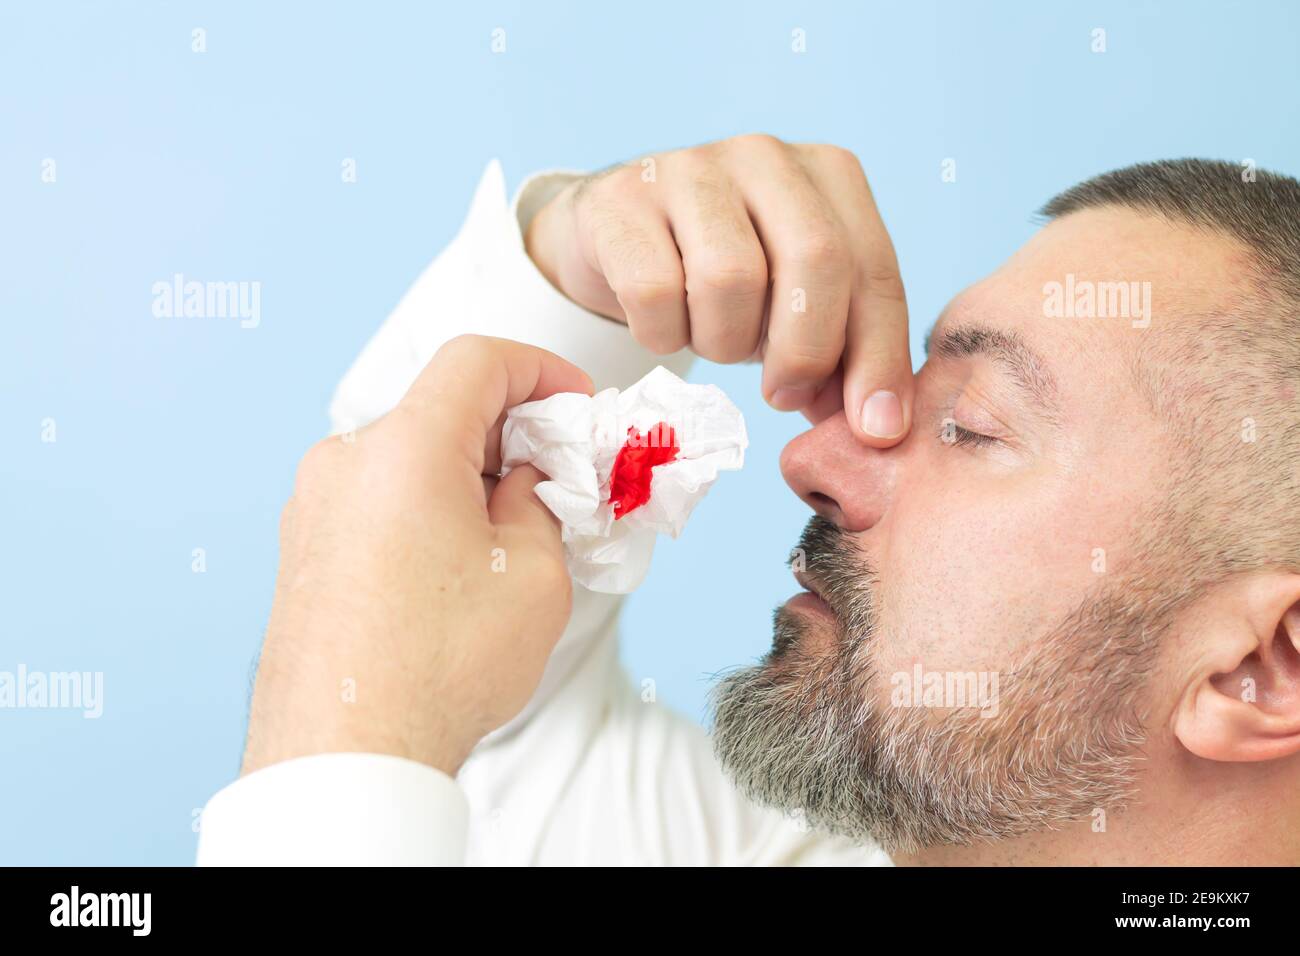 Homme souffrant de saignements de nez ou d'épistaxis et utilisant du papier de soie pour arrêter le saignement. Concept de soins de santé Banque D'Images